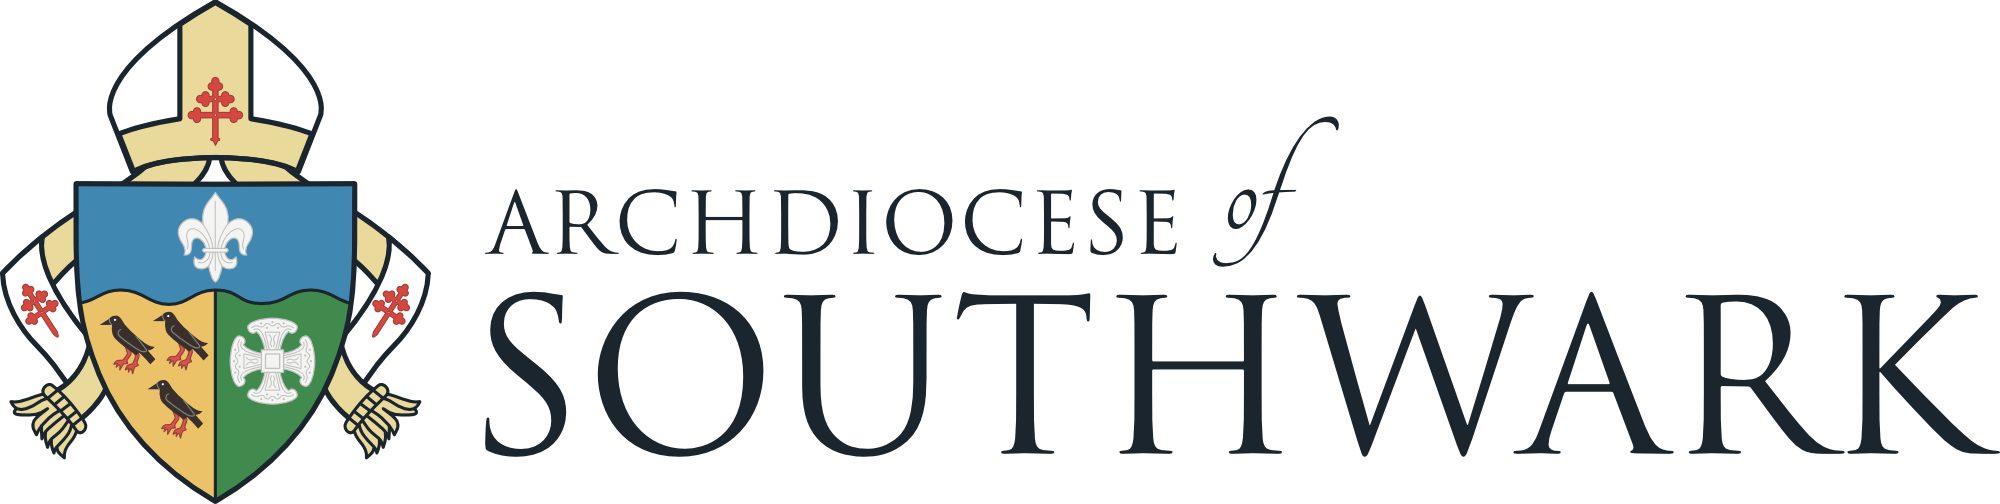 Roman Catholic Archdiocese of Southwark logo